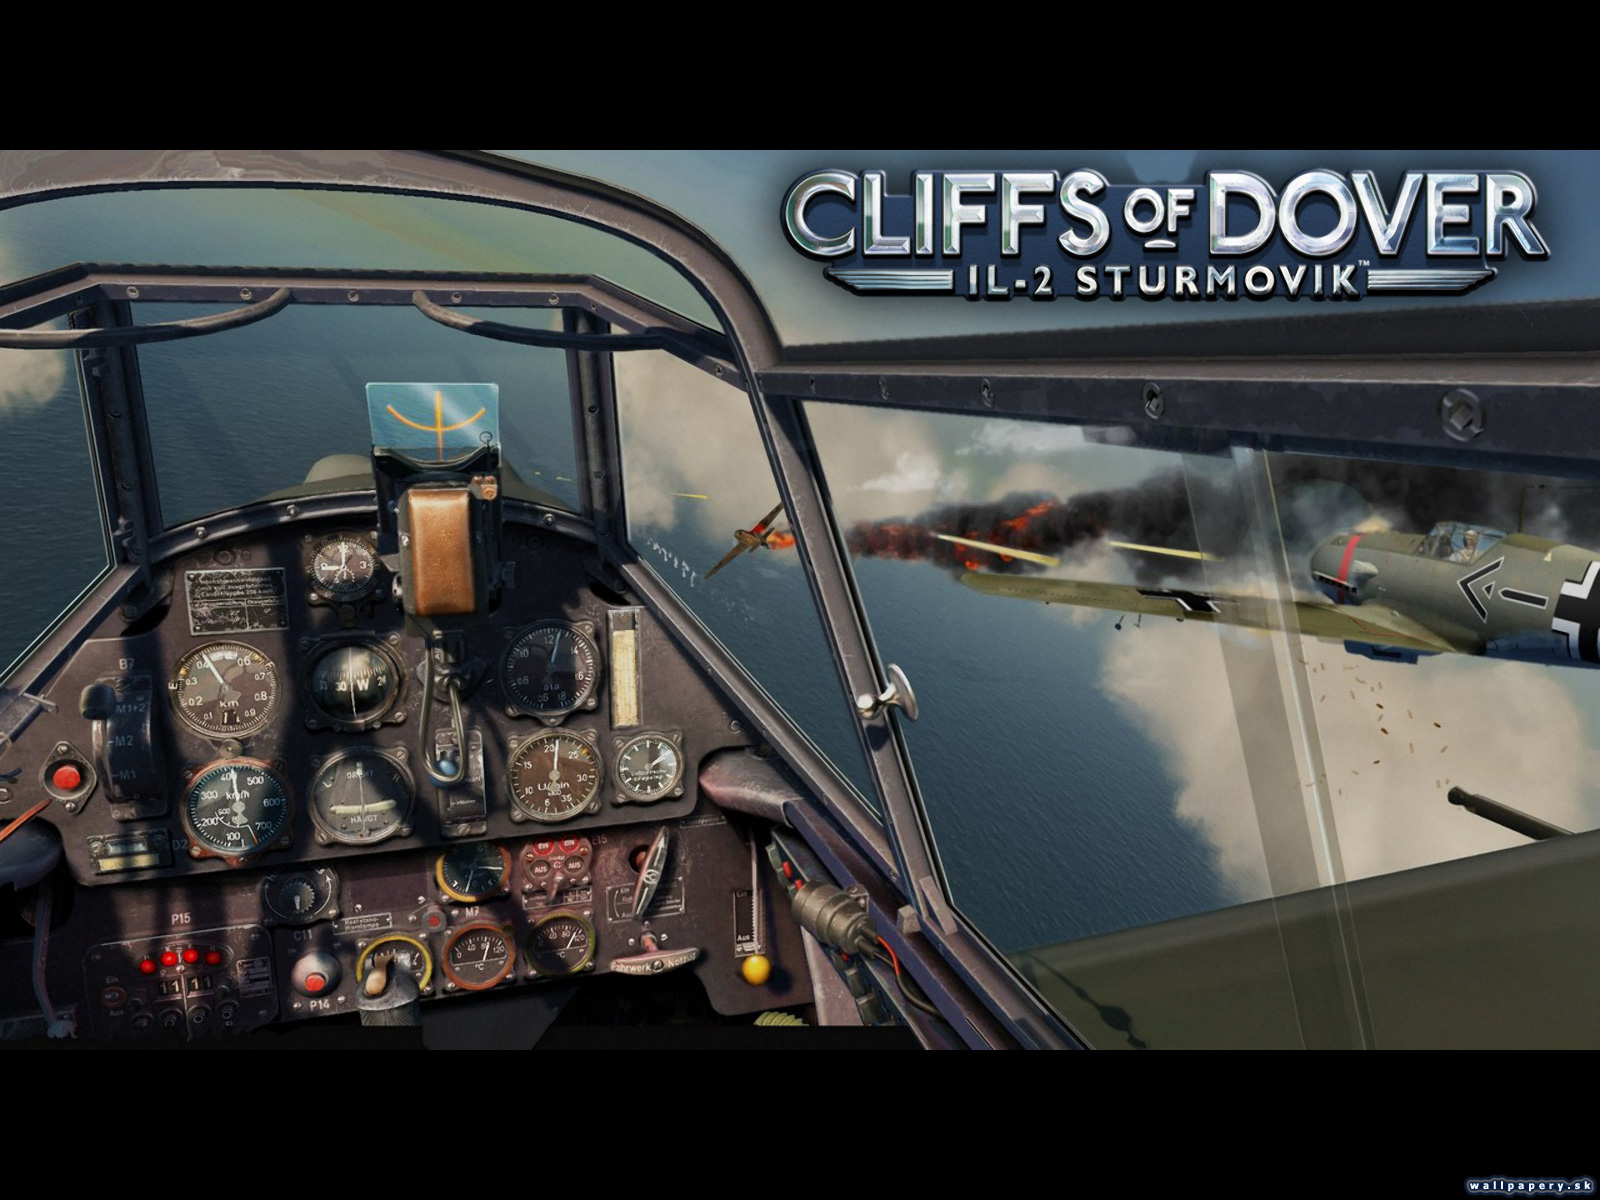 IL-2 Sturmovik: Cliffs Of Dover - wallpaper 4